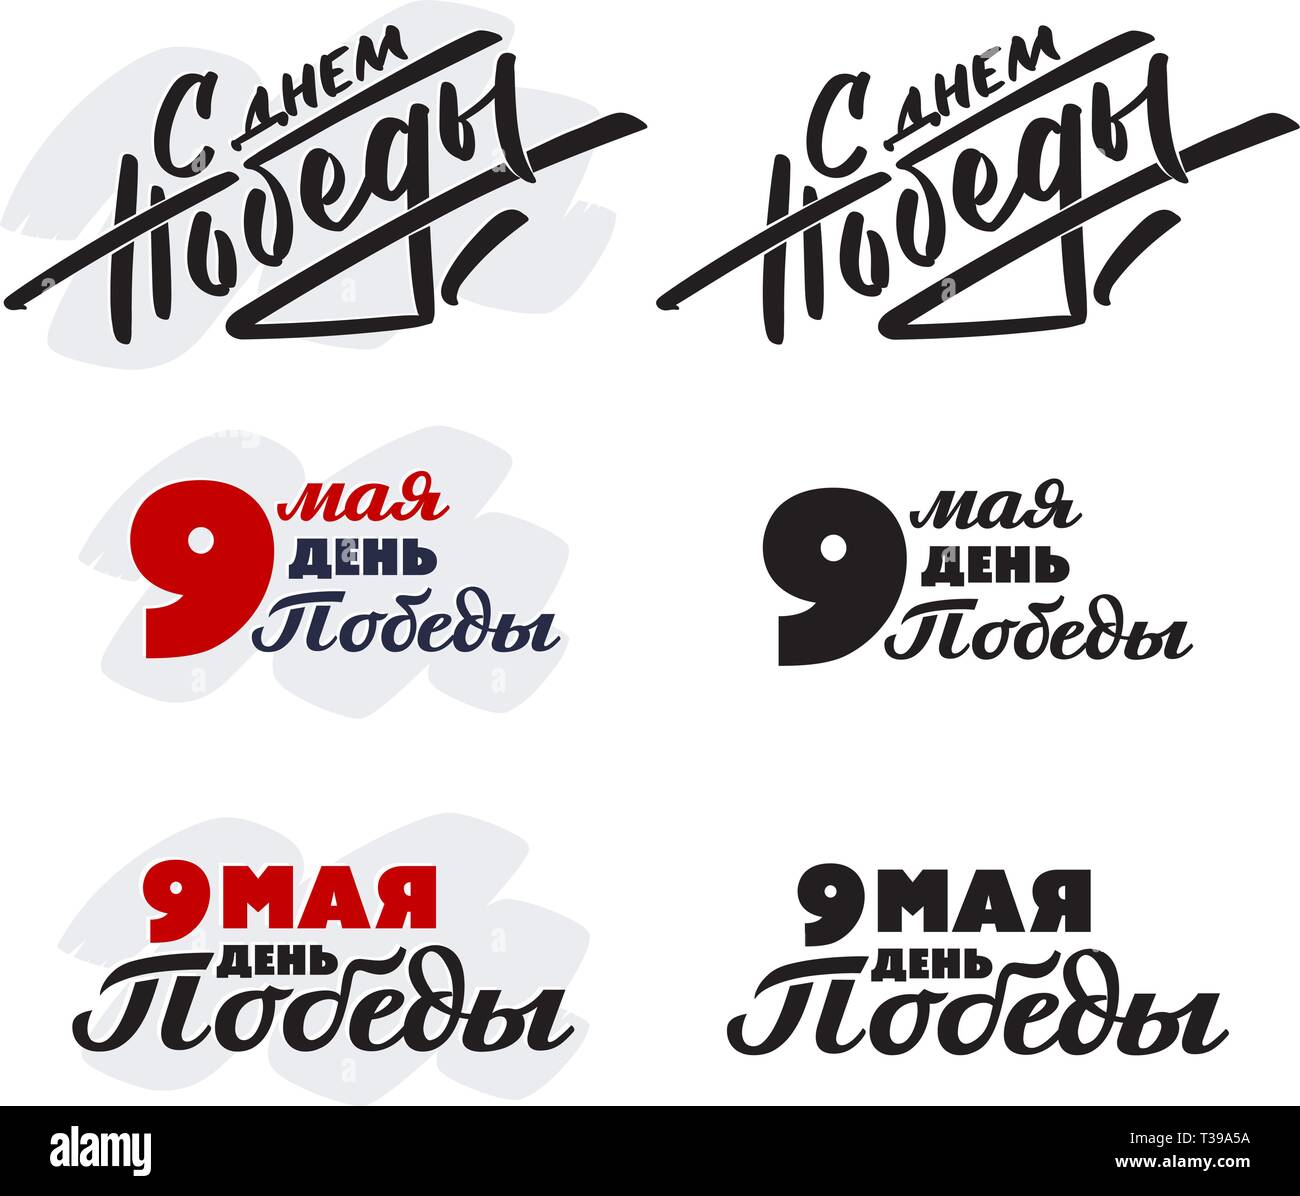 Collection de la typographie et le lettrage avec le texte sur la langue russe, les lettres cyrilliques 'May 9 - Victory Day'. Ensemble d'inscriptions texte pour le 9 mai dans sur Illustration de Vecteur